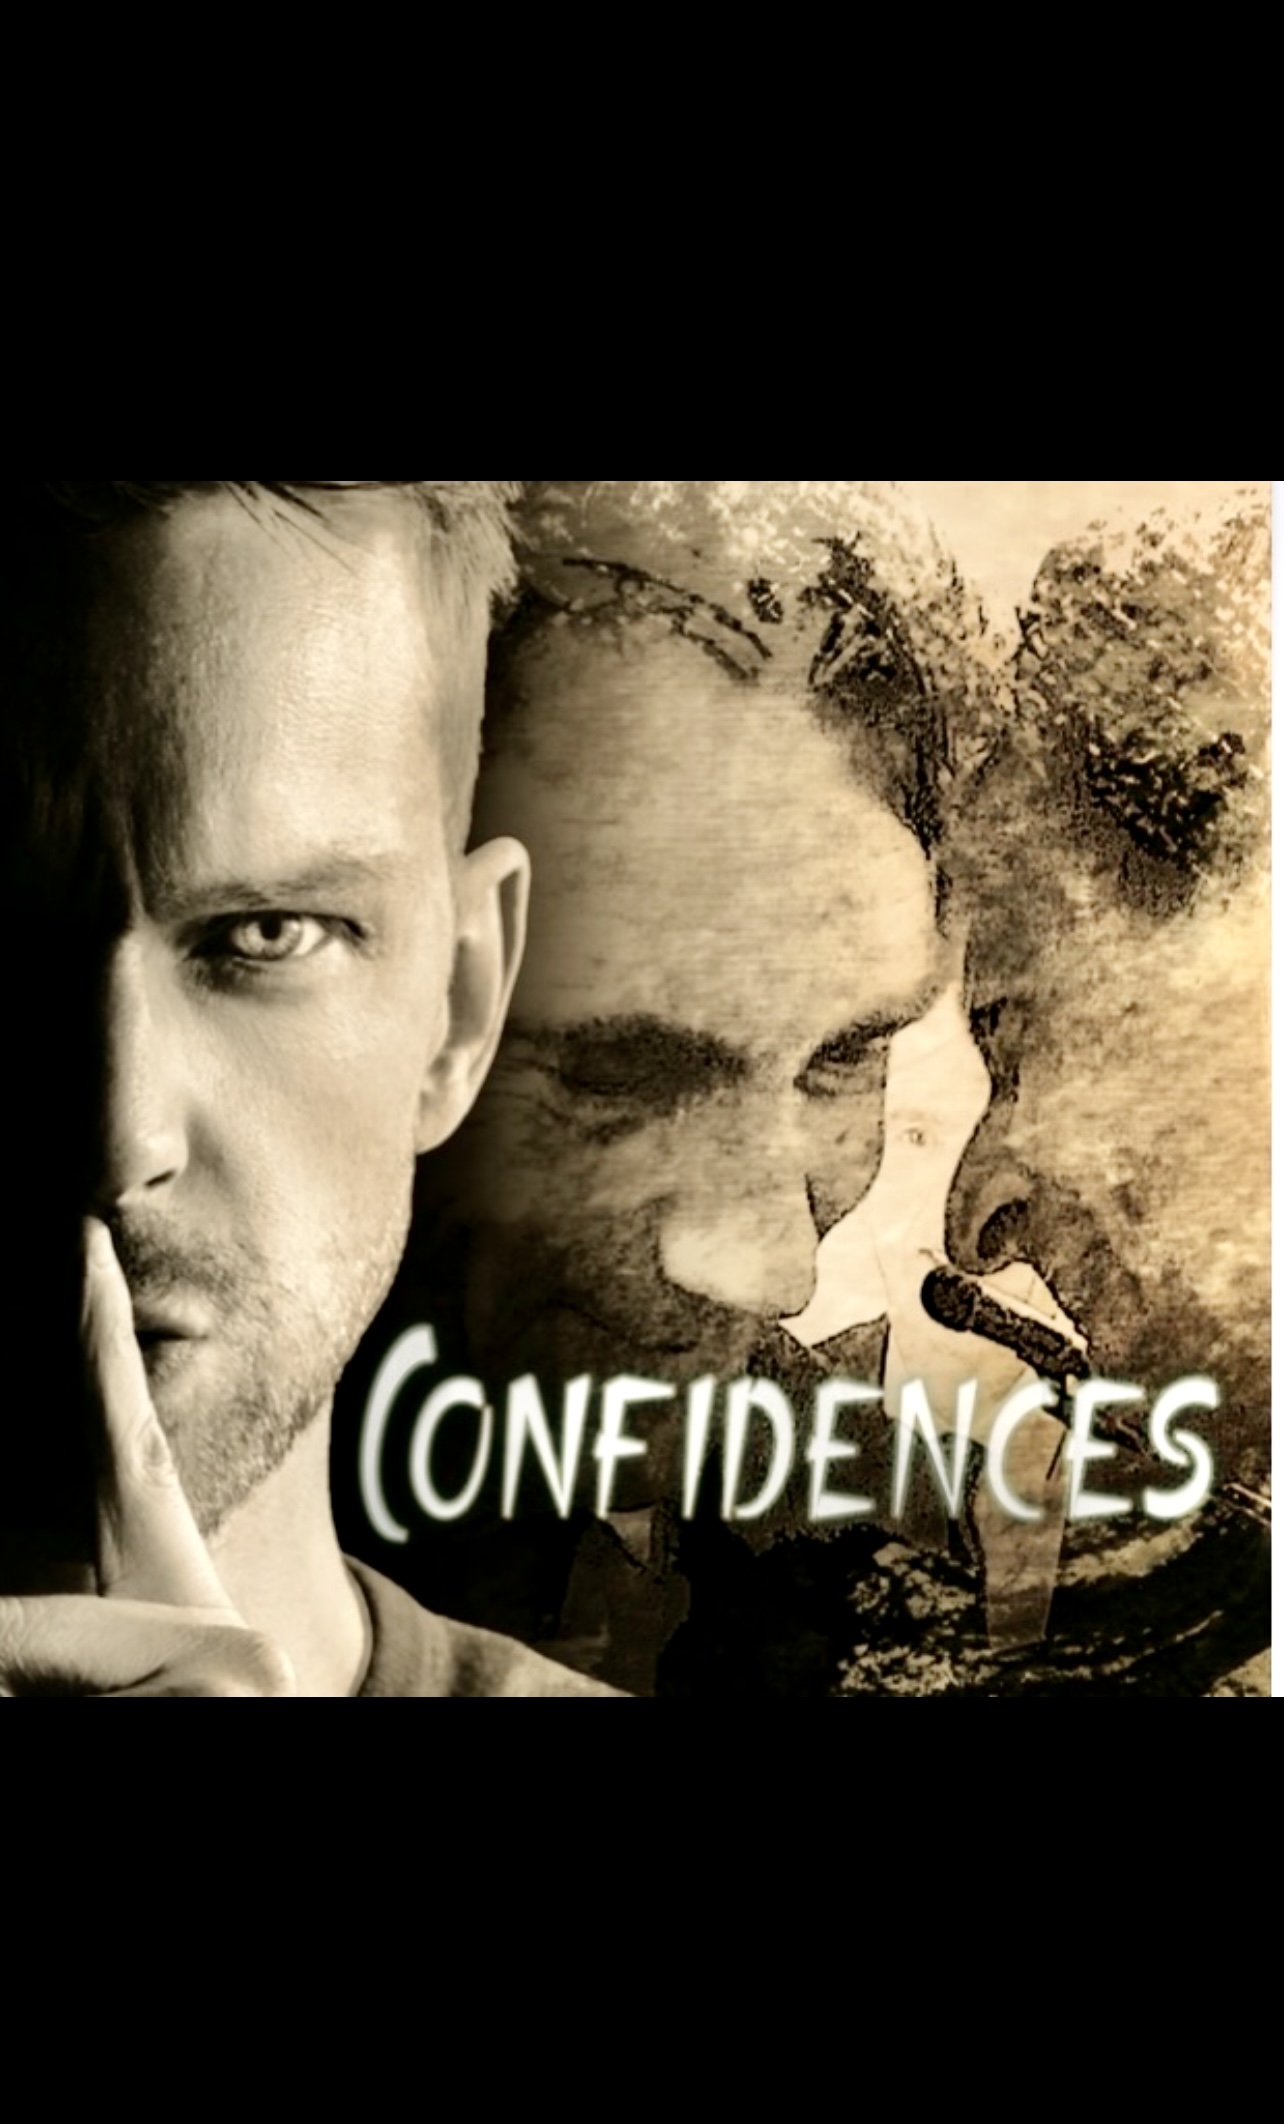 La couverture des "Confidences de Michel Bureau" mettant en scène un homme et une femme.